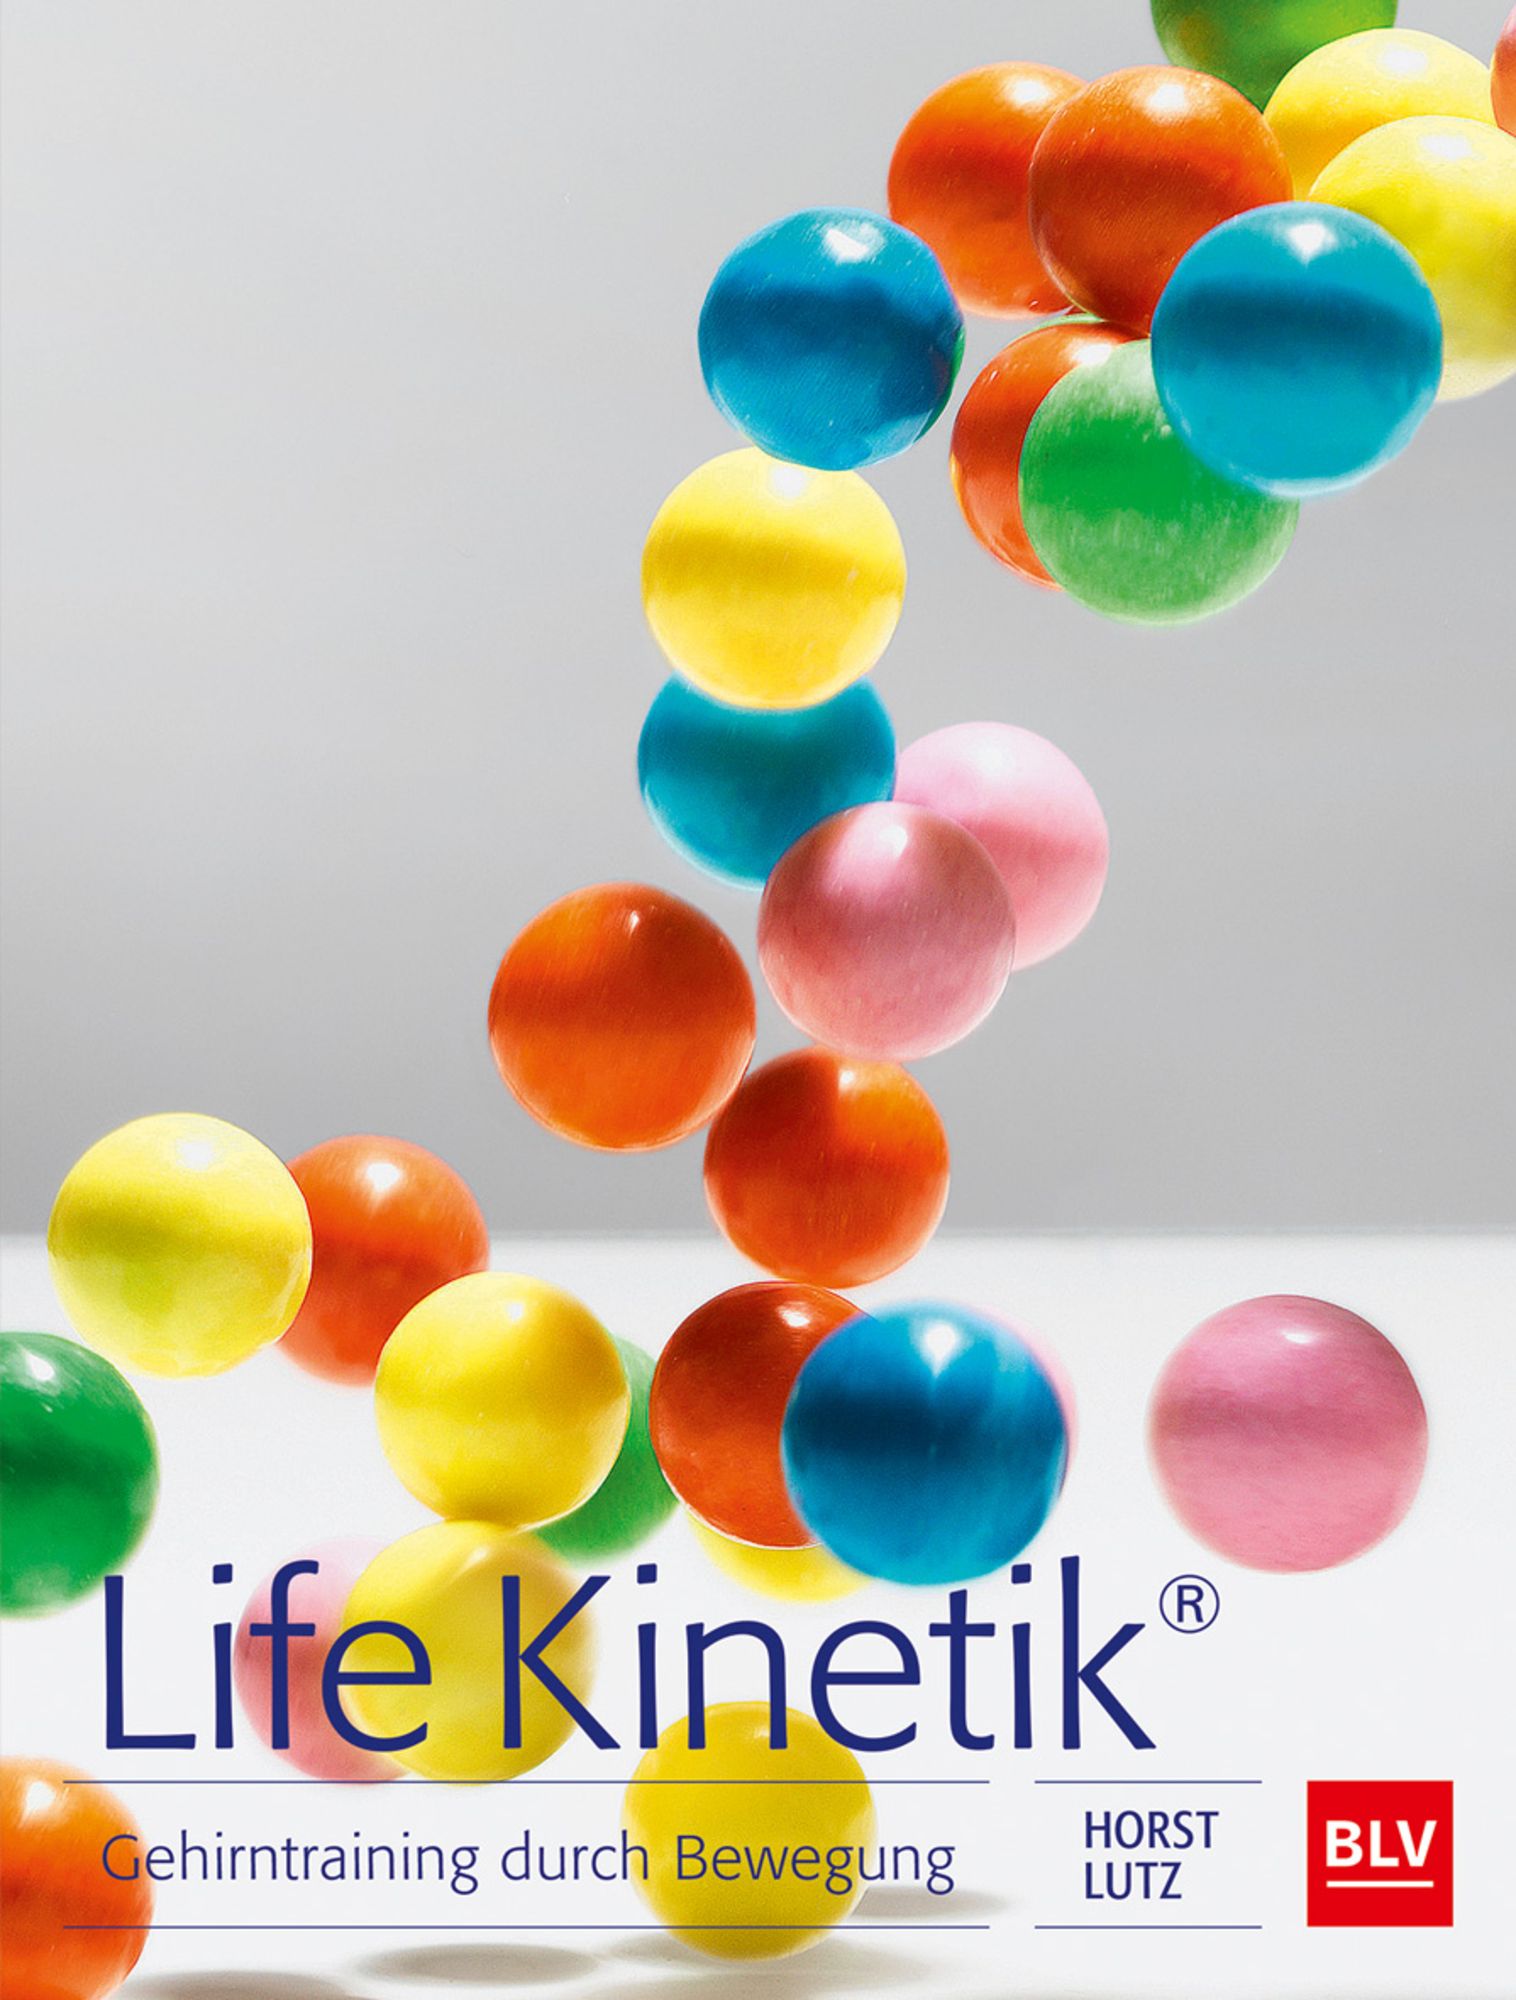 Horst Lutz auf LinkedIn: #lifekinetik #leistung #entwicklung